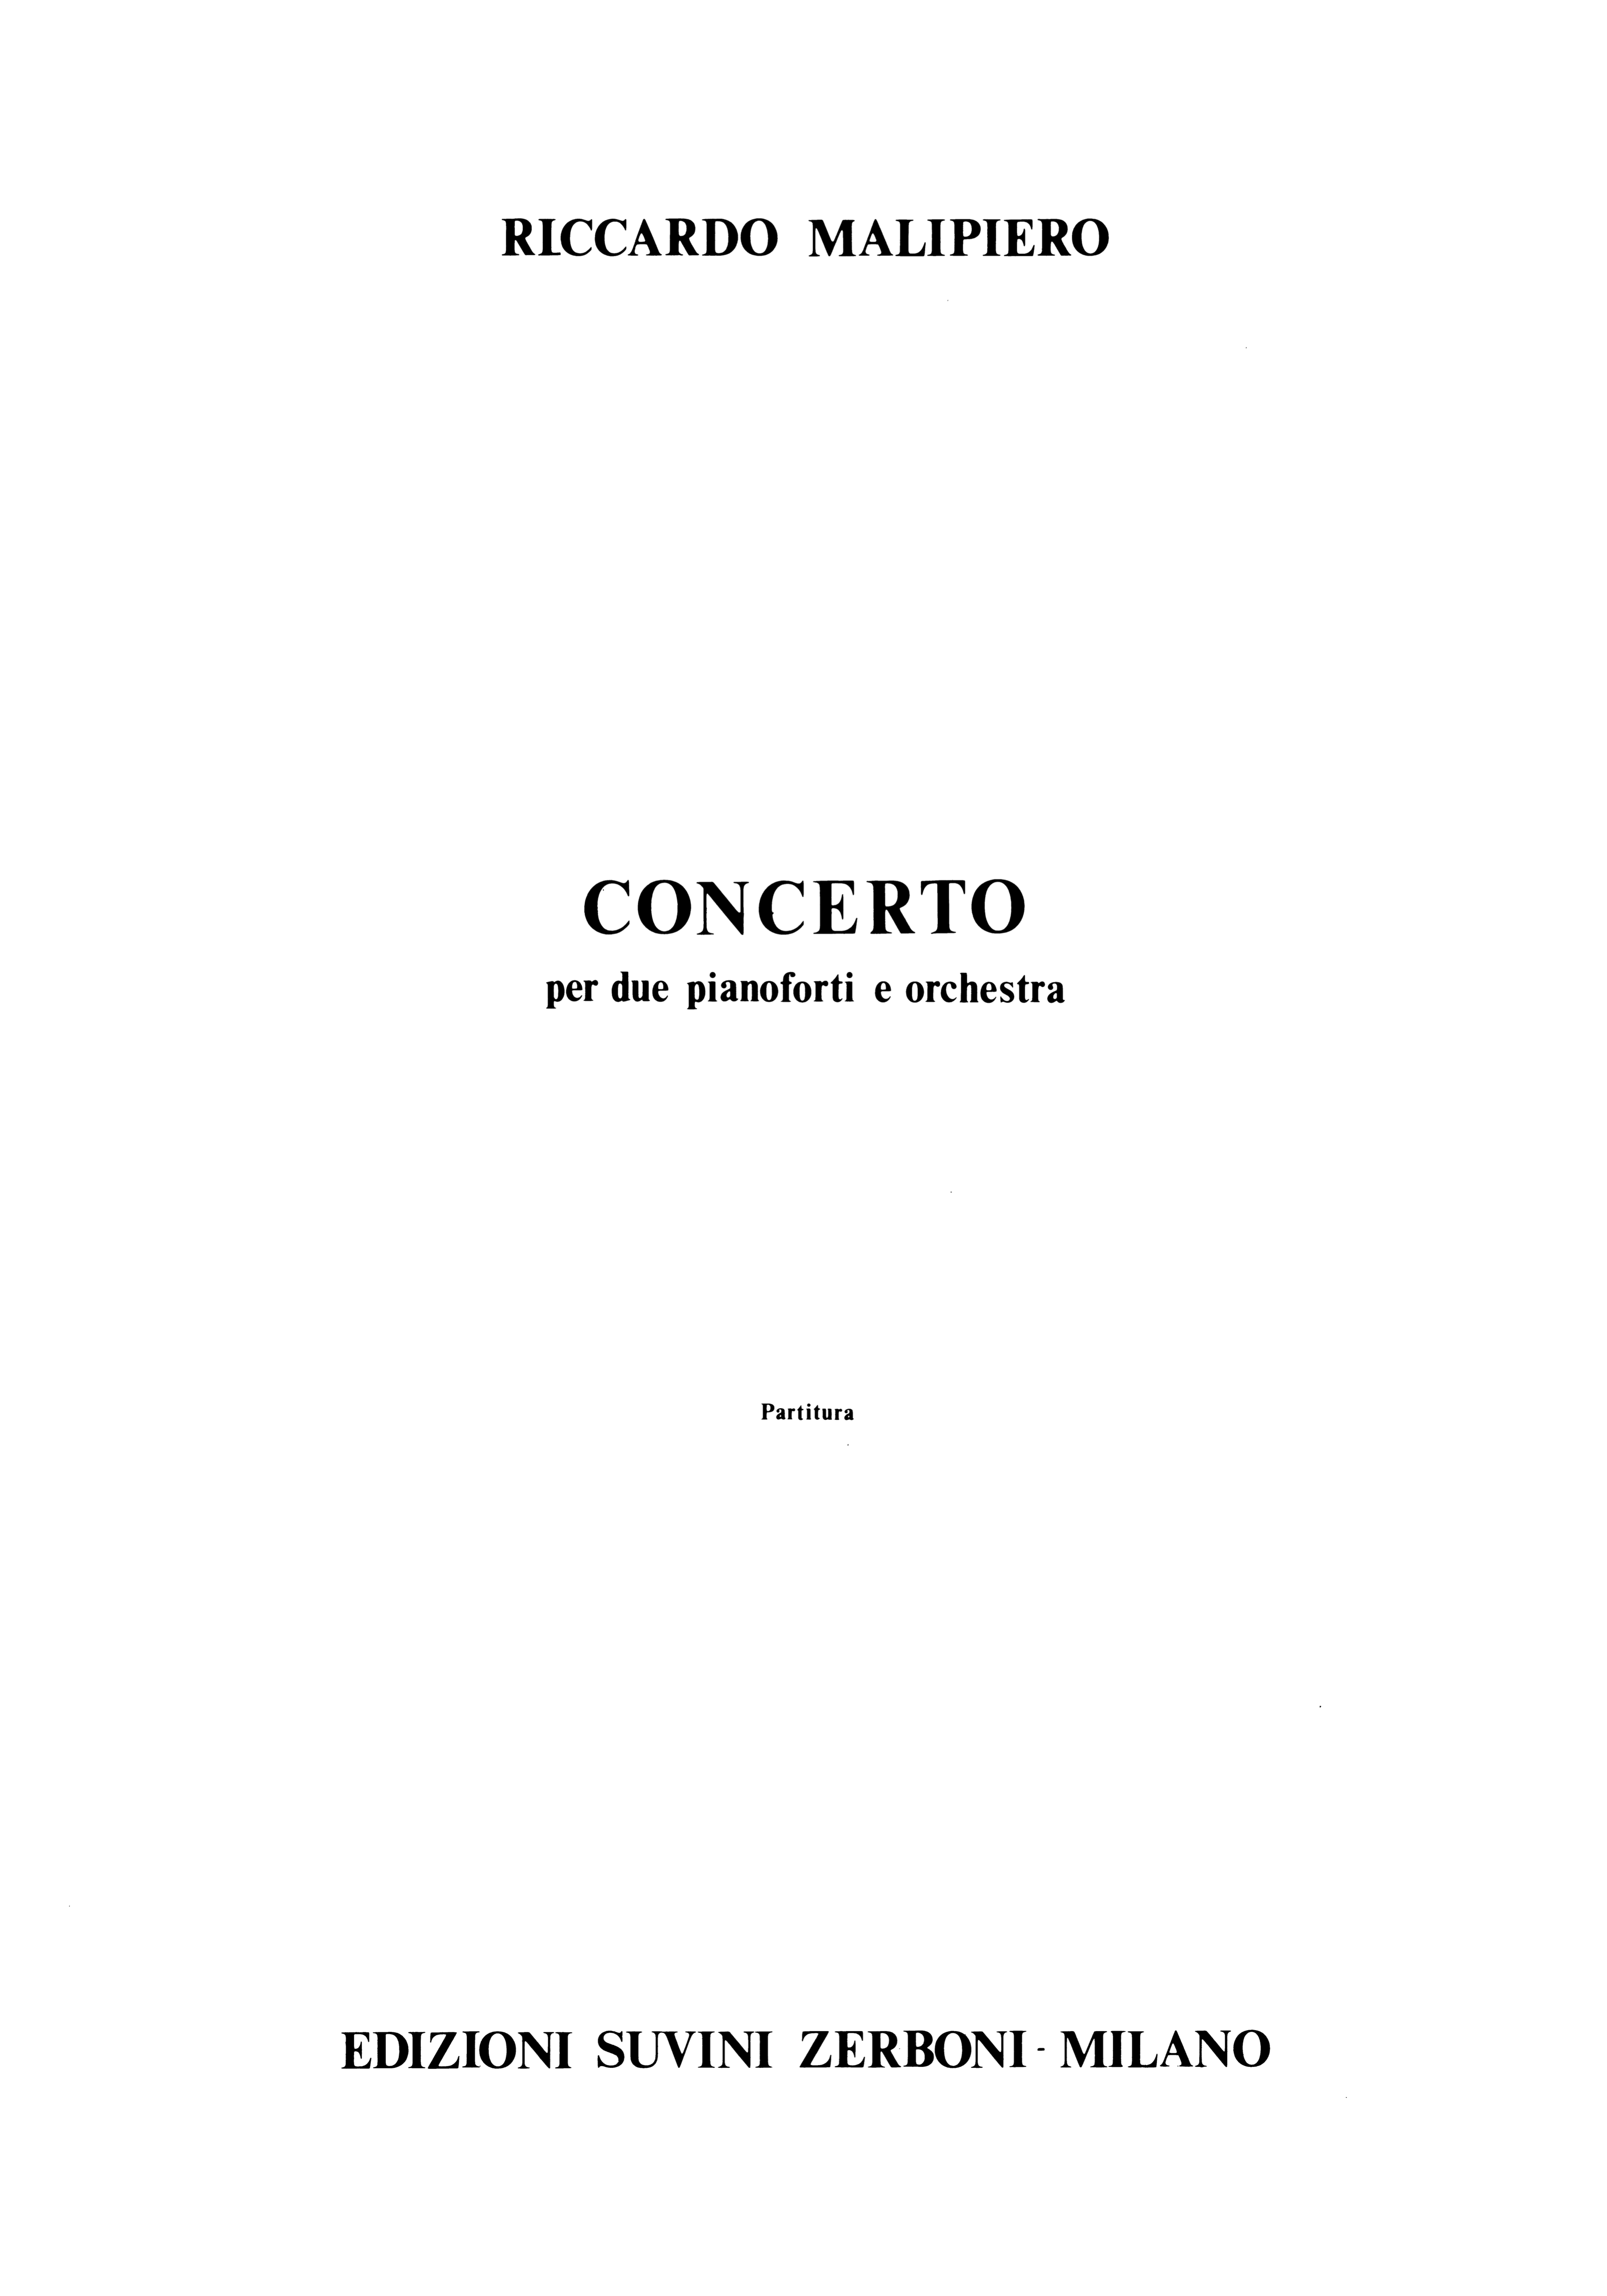 Concerto per due pianoforti e Orchestra_Malipiero Riccardo 1